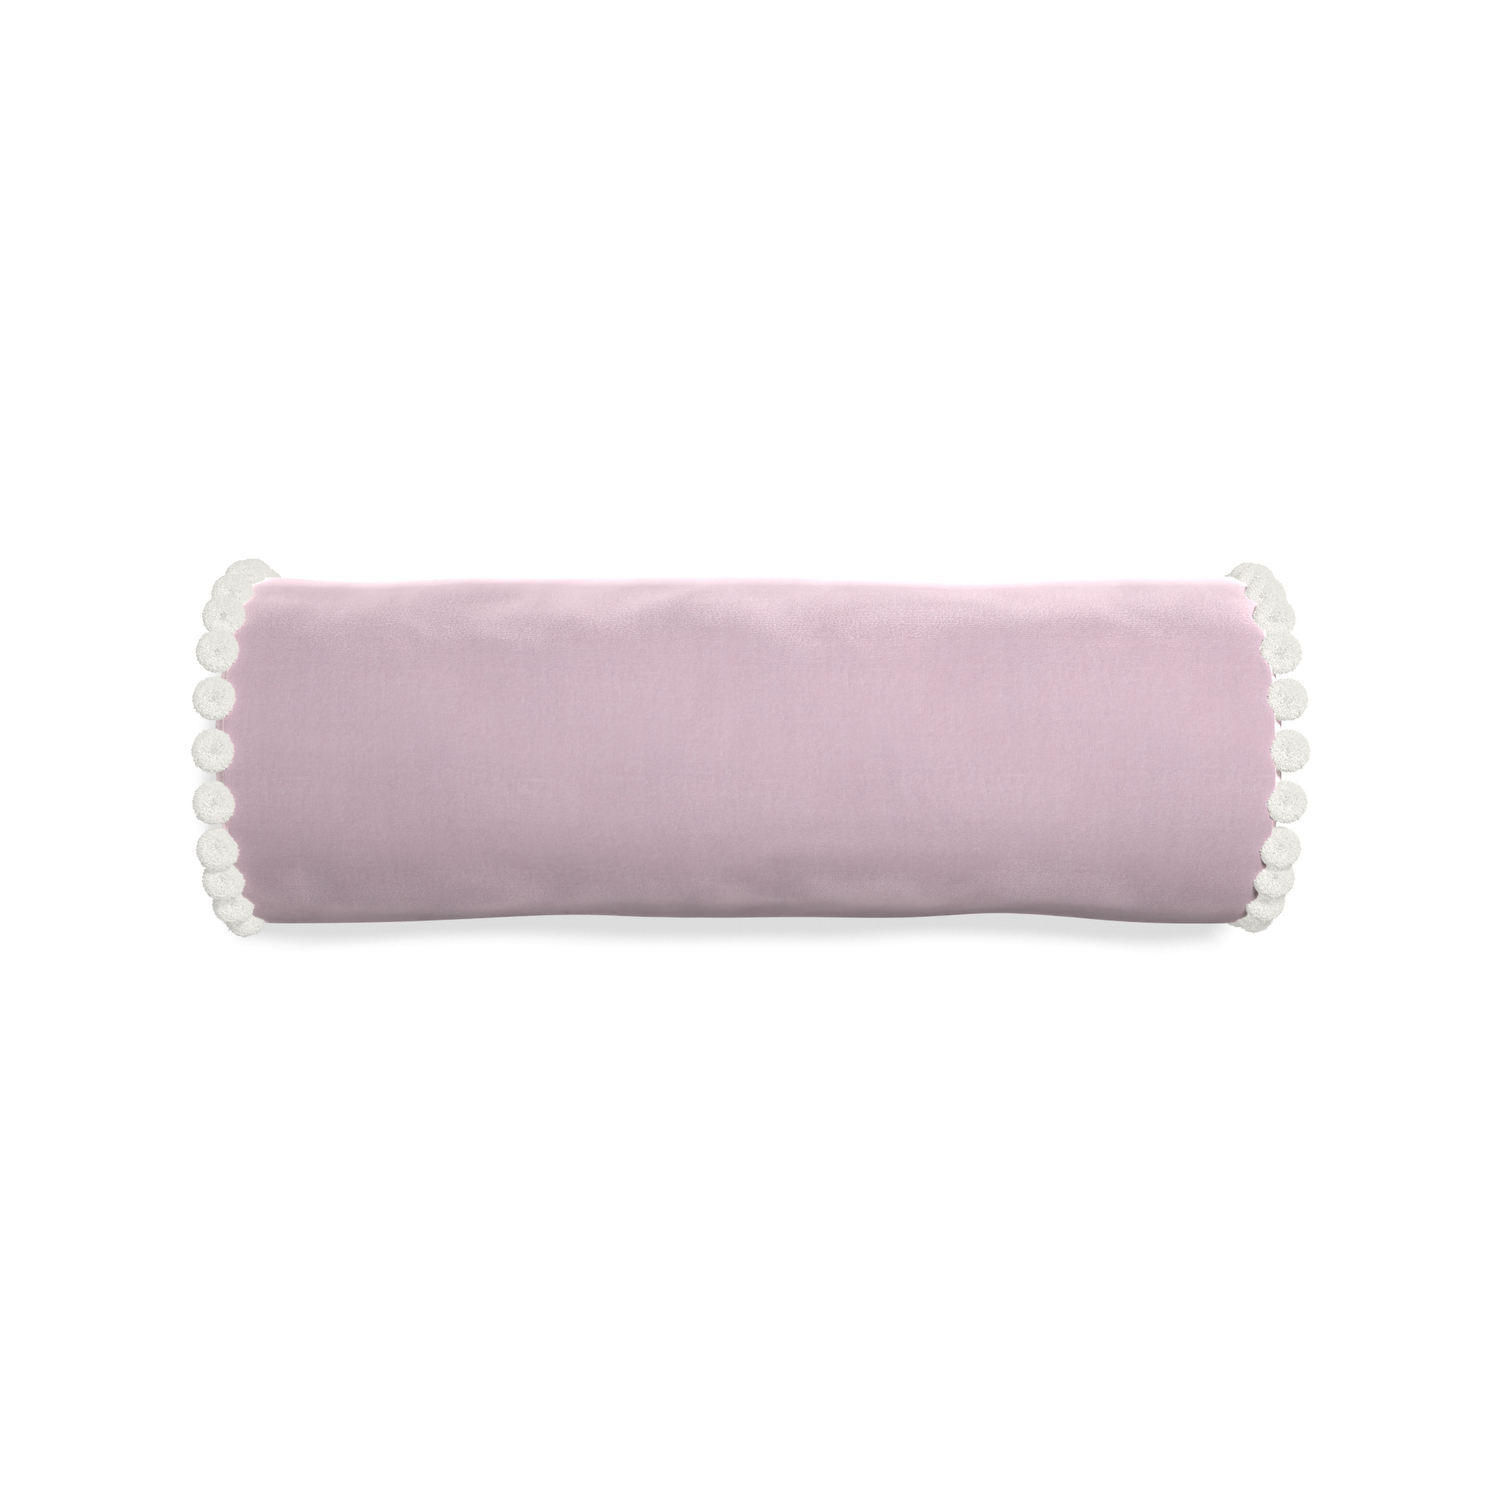 bolster lilac velvet pillow with white pom poms